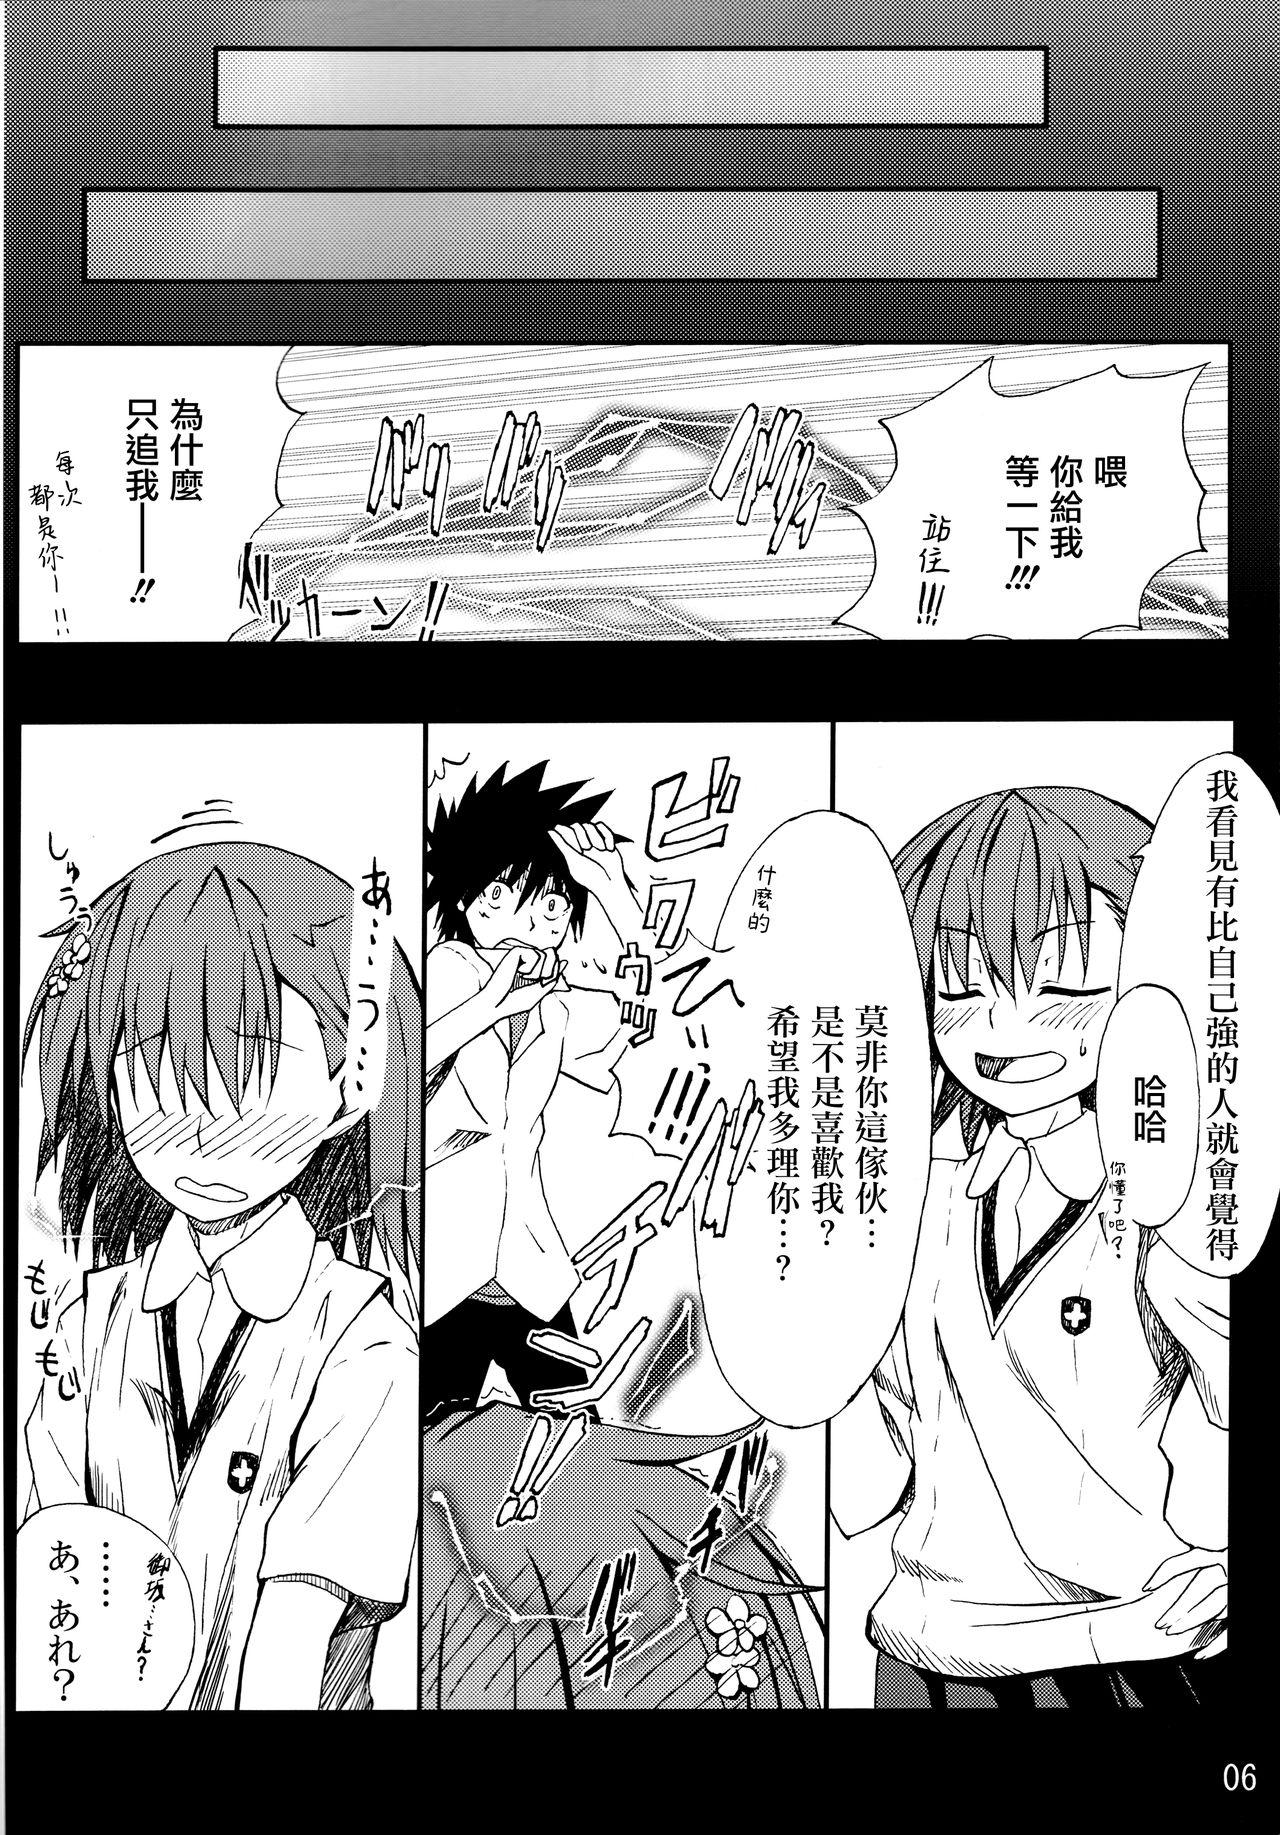 Gay Public Toaru mousou no chou denji hon 02 - Toaru kagaku no railgun Amigo - Page 5